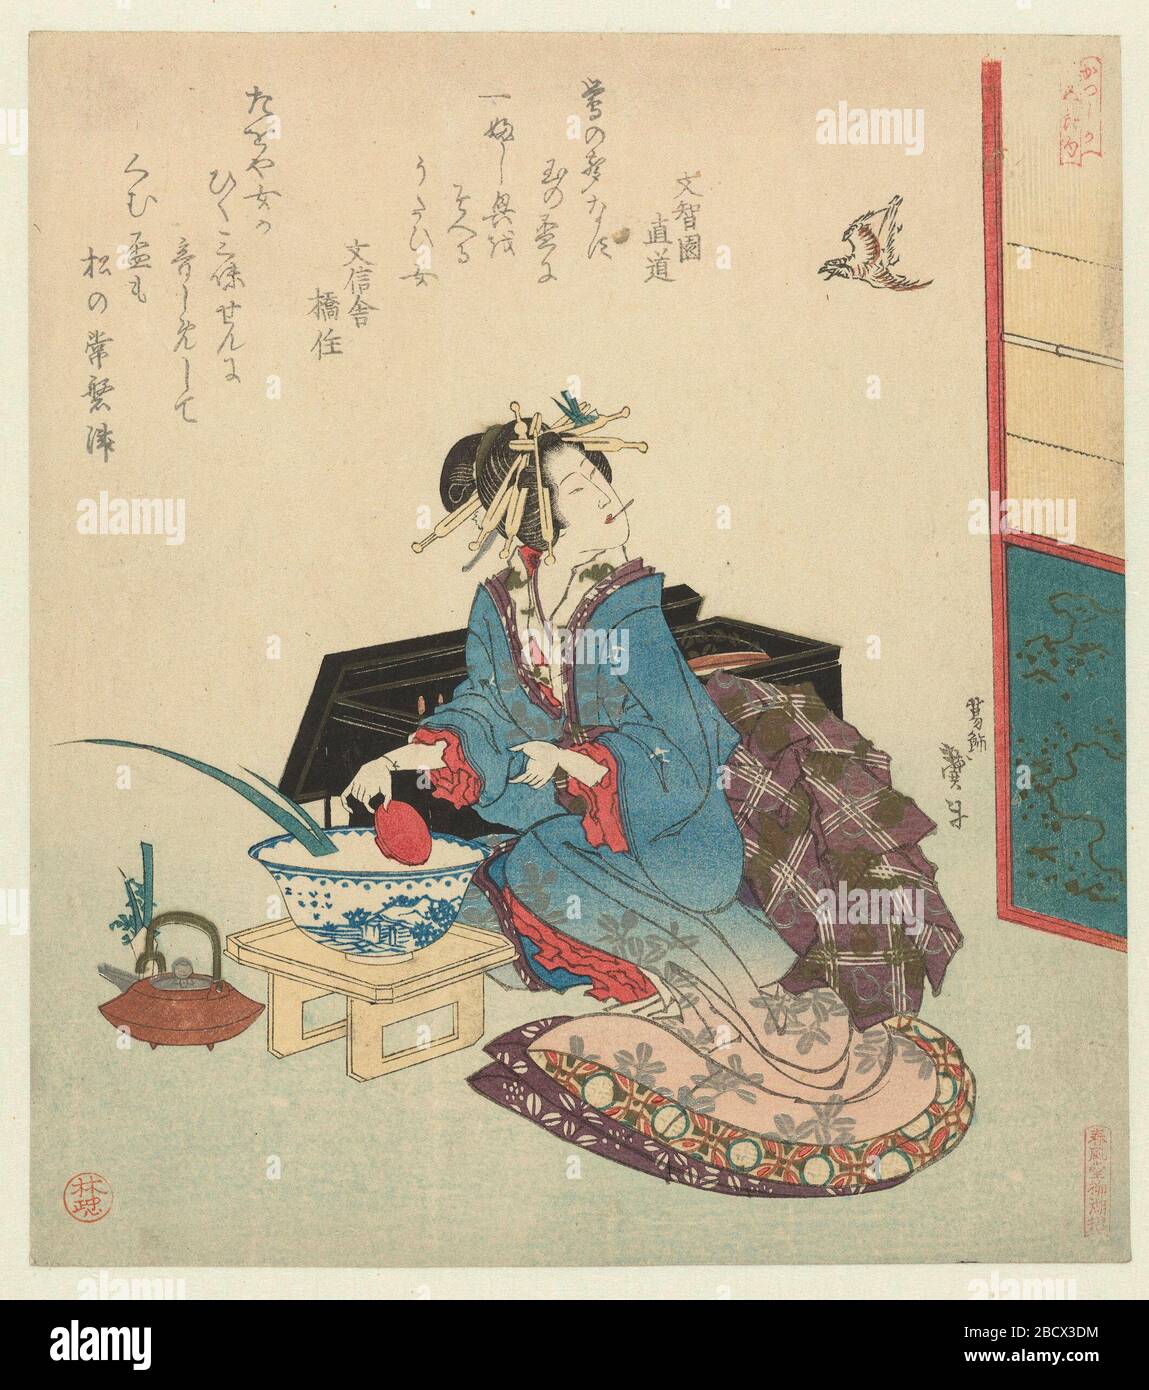 Geisha kijkt op naar een vliegende koekoek; Nederlands: Een geisha spoelt haar rijstwijnkopje in porseleinen kom, links van haar een keteltje met gekruide rijstwijn (sake). Achter haar staat haar gelakte